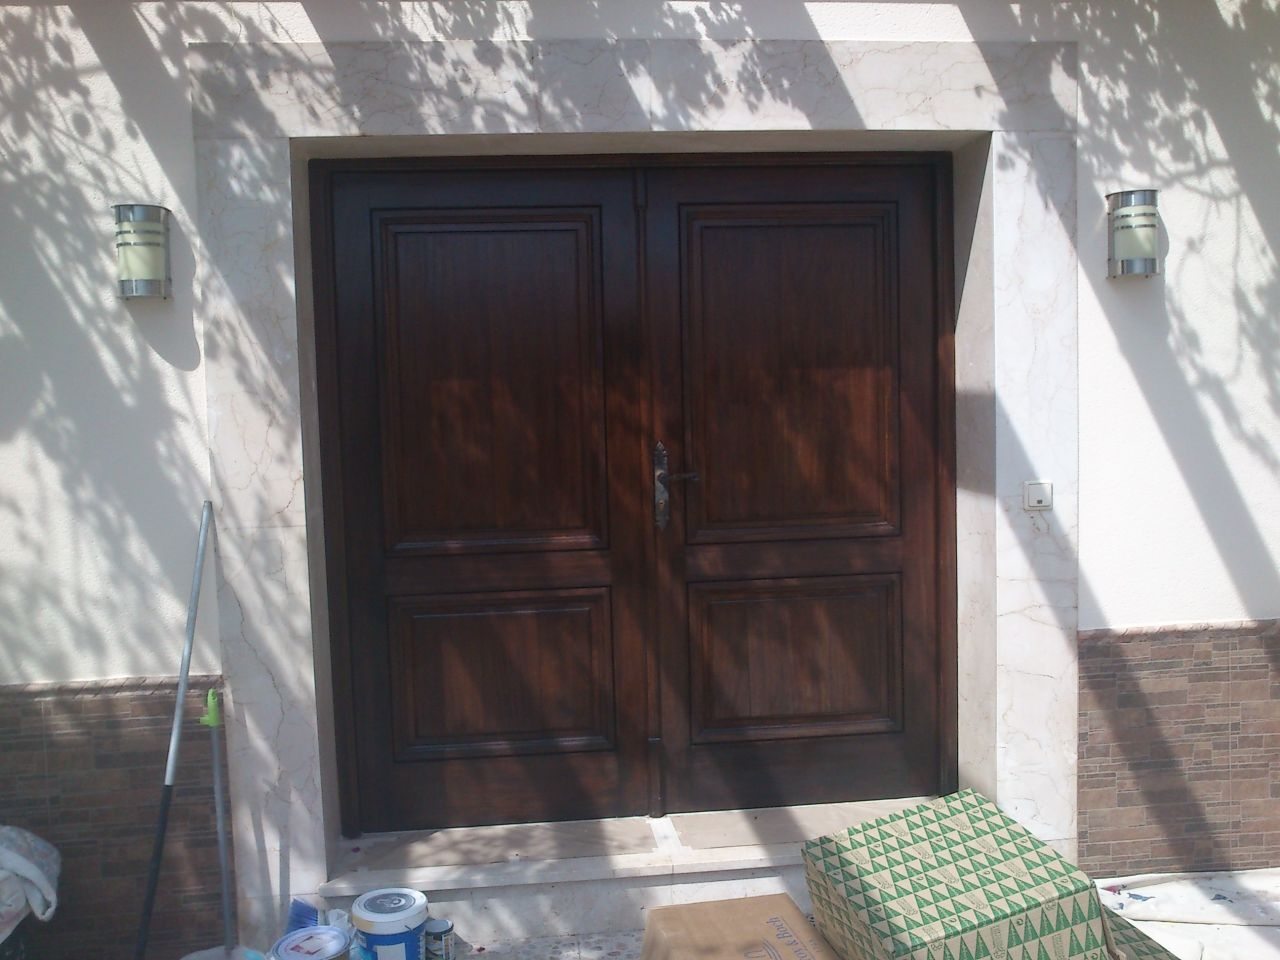 Resultados del trabajo del tratamiento de madera. Expertos en tratamiento y barnizado de madera en puertas y ventanas de madera